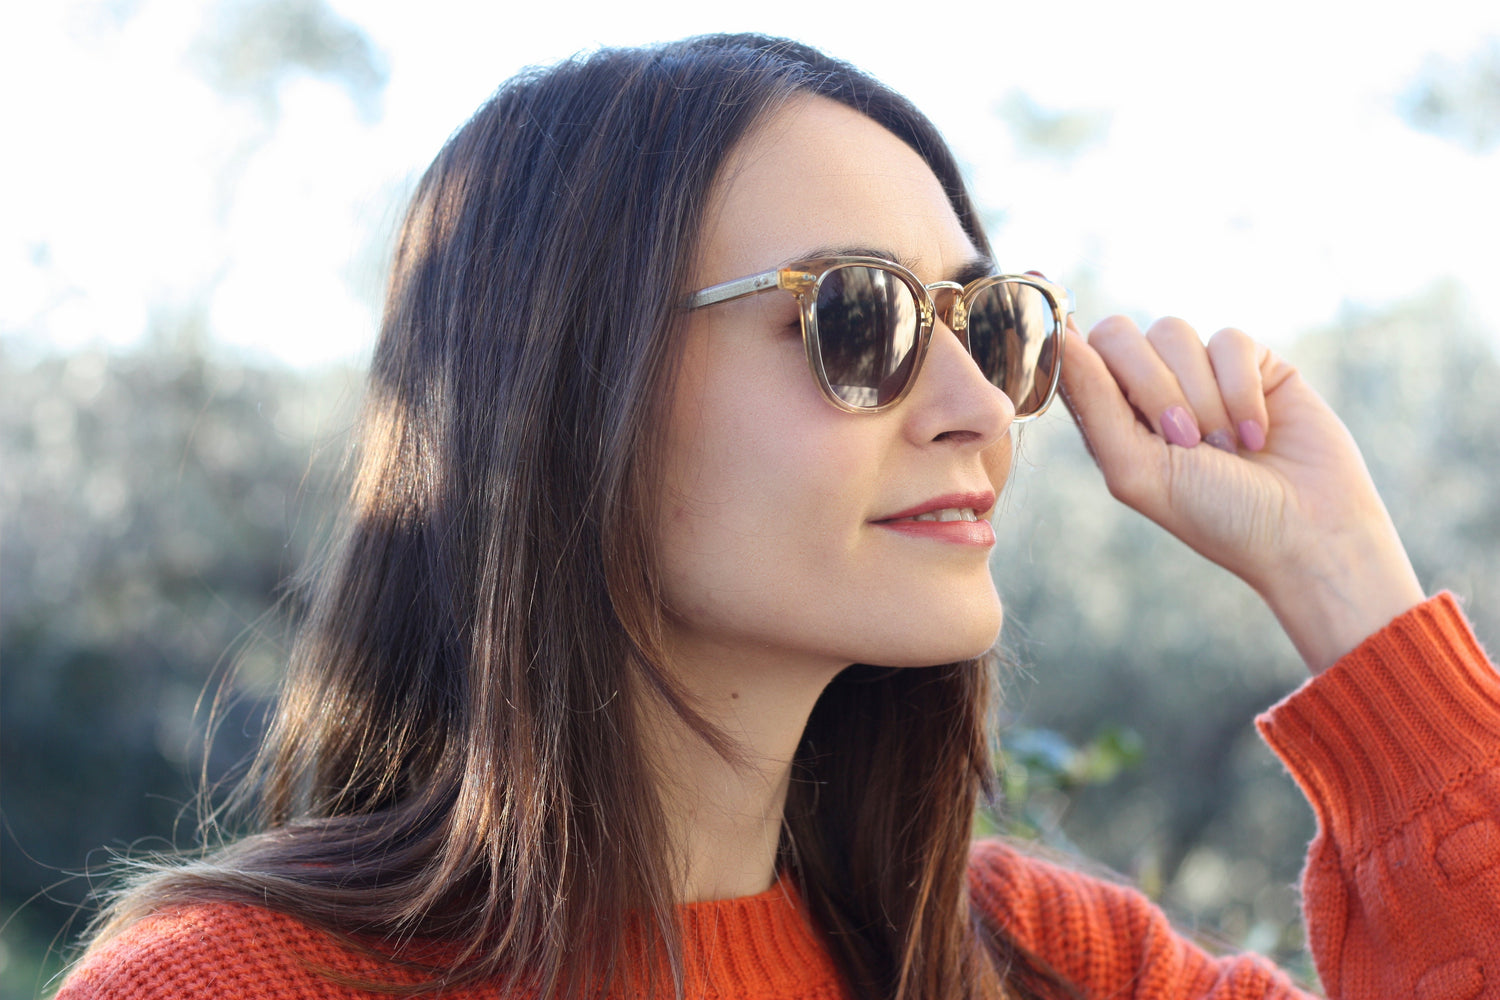 Are Back Glasses Too Harsh? | KOALAEYE OPTICAL